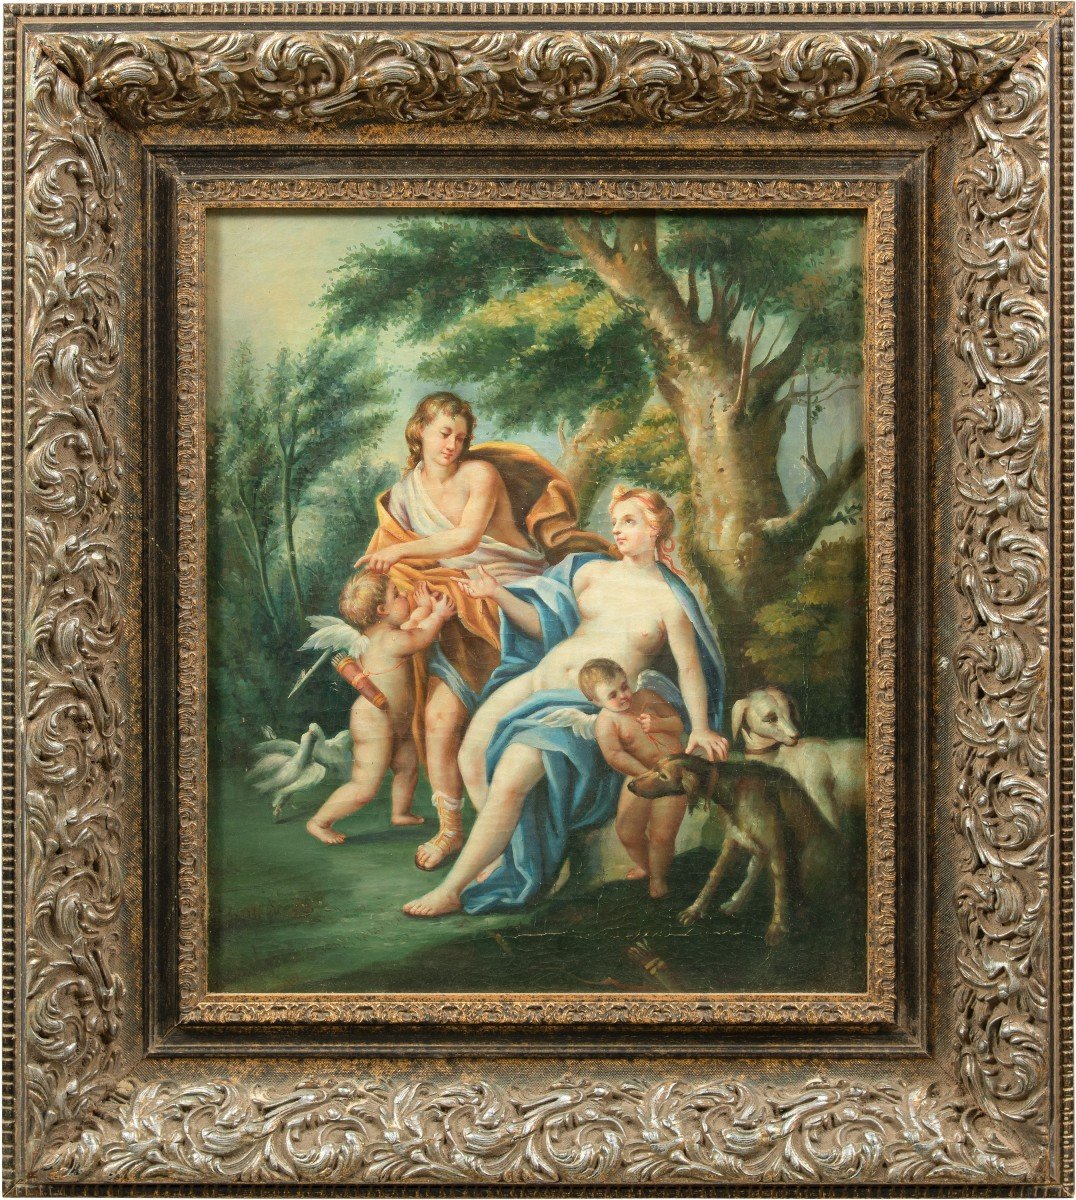 Seguace di François Lemoyne (XIX sec.) - Scena mitologica con due putti e levrieri.